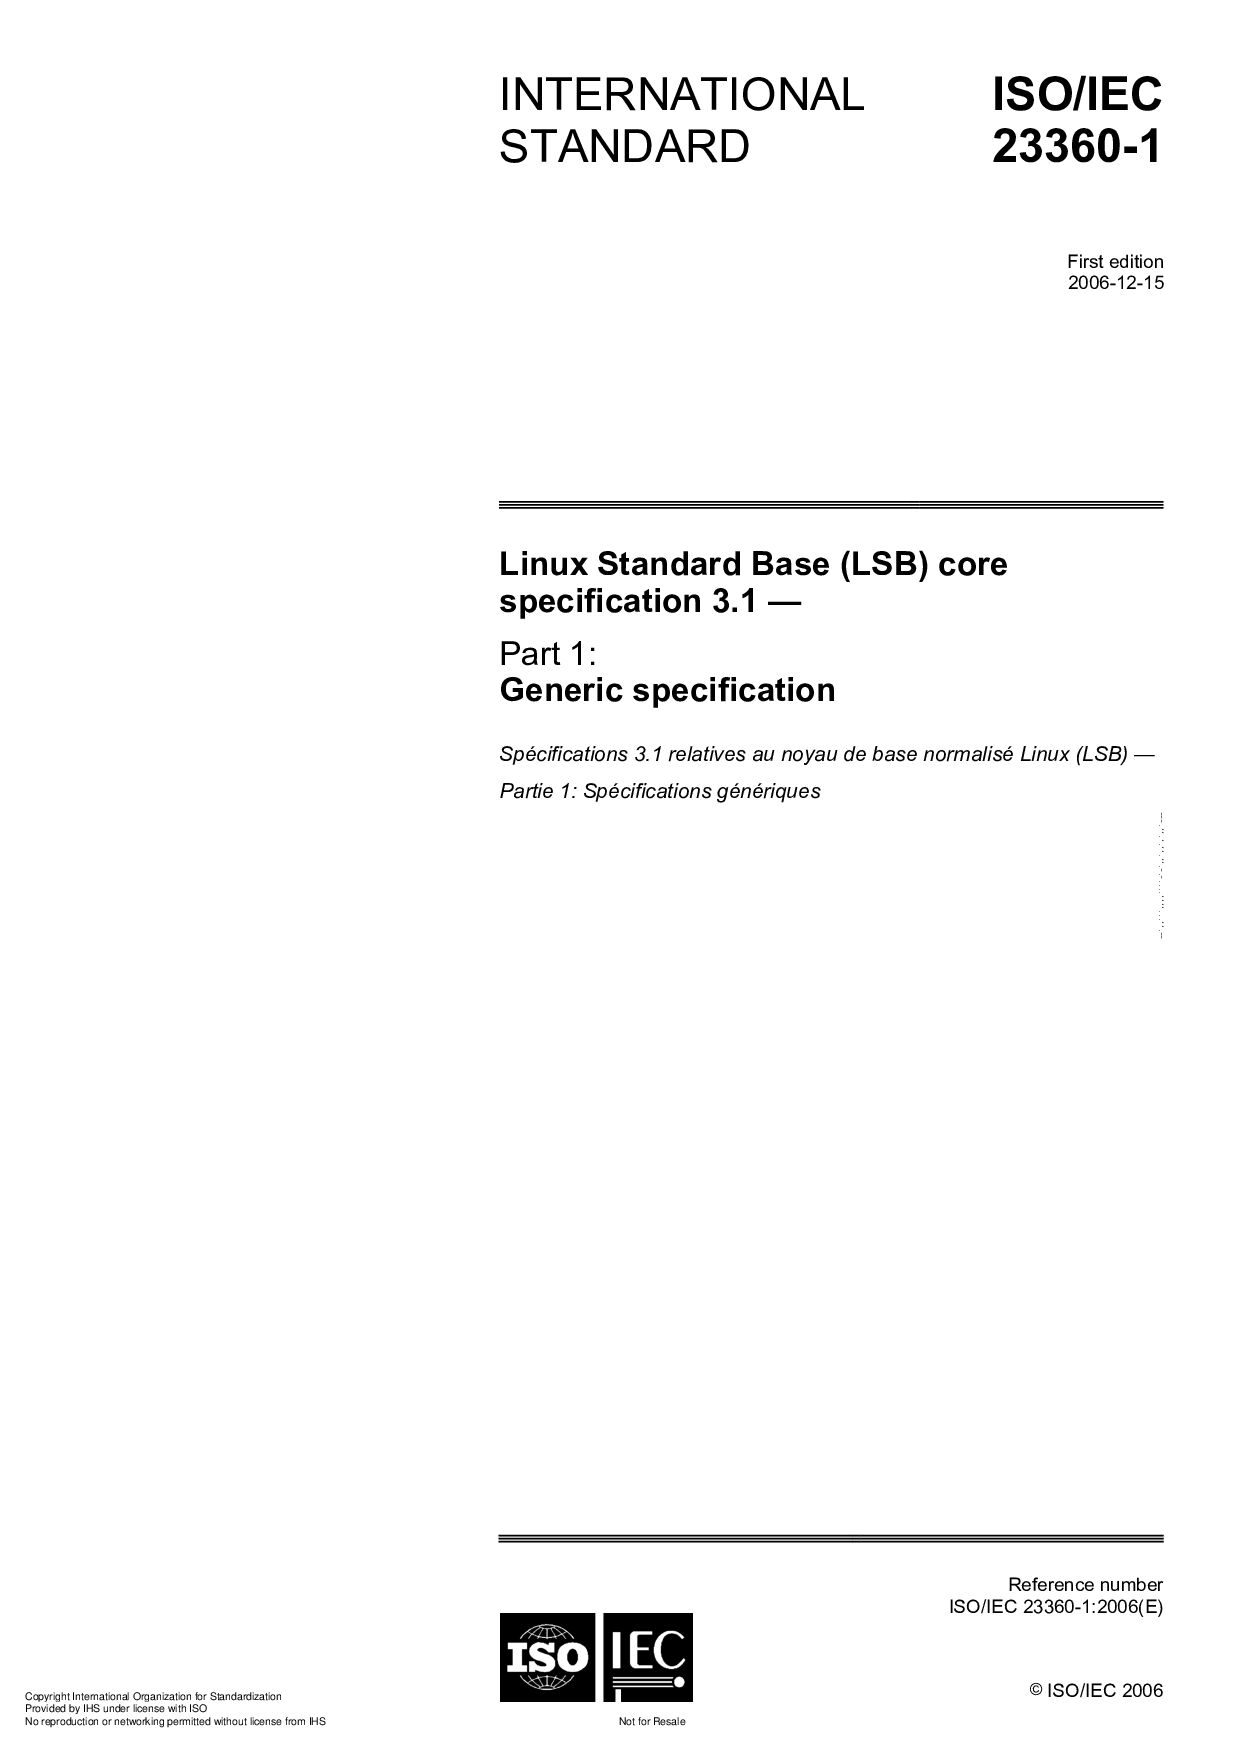 ISO/IEC 23360-1:2006封面图